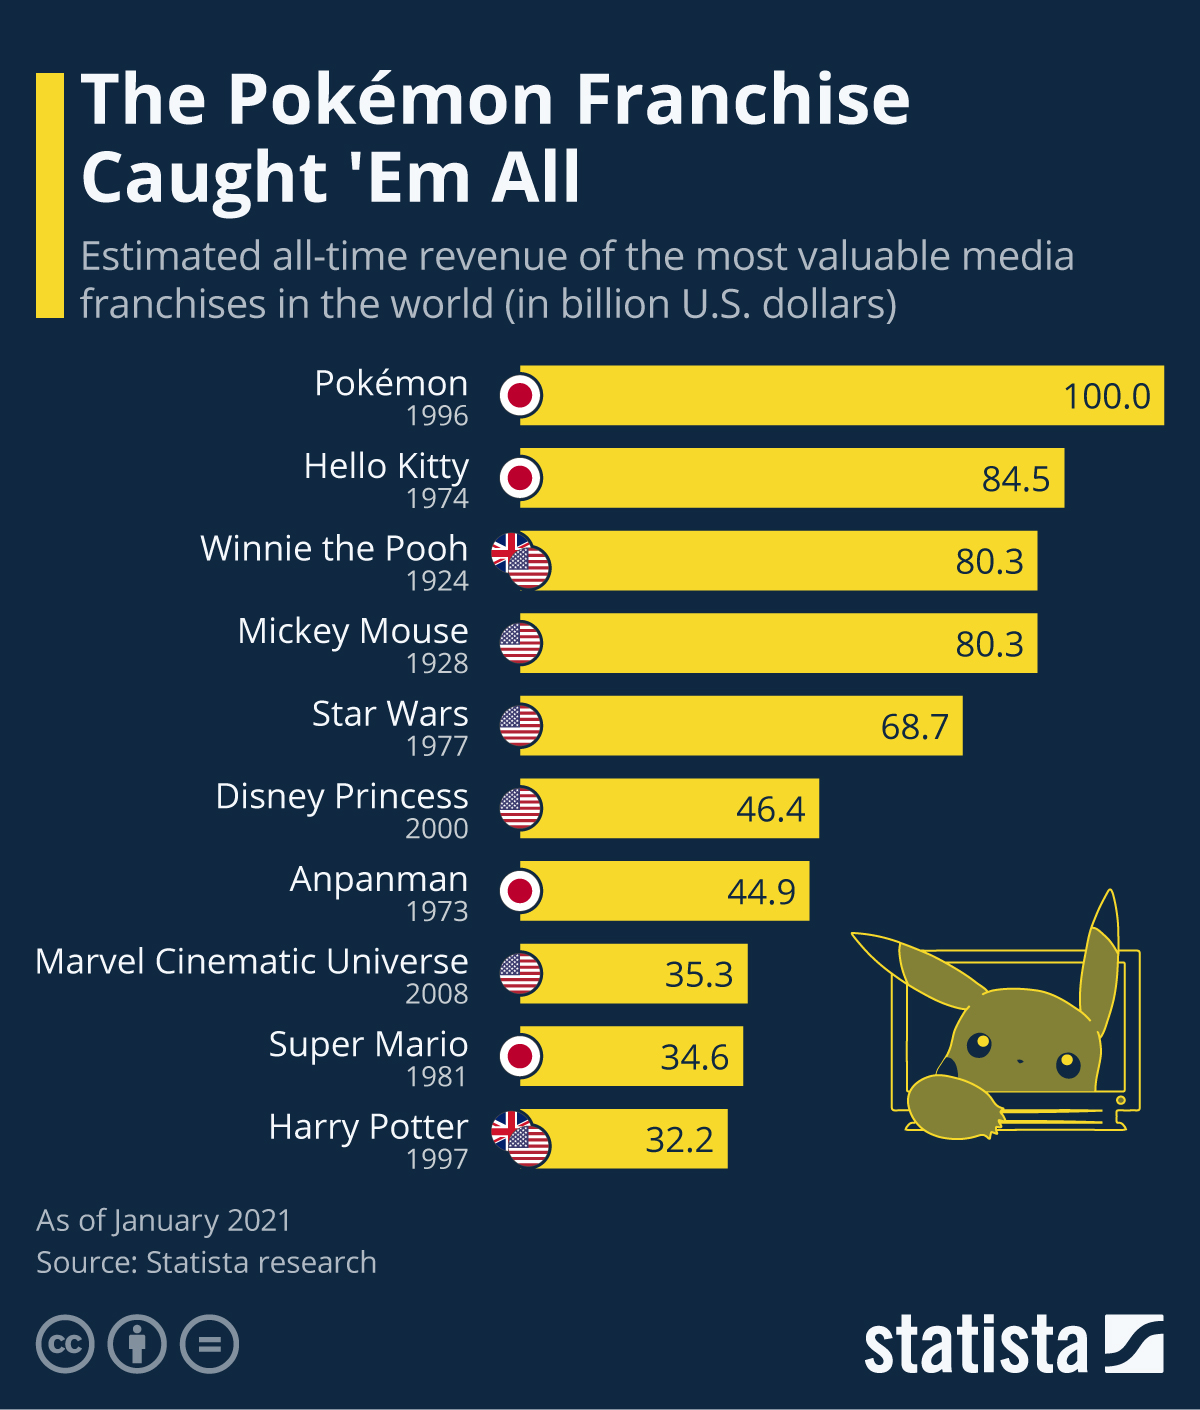 Pokemon là thương hiệu truyền thông nhượng quyền đắt giá nhất thế giới với doanh thu 100 tỷ USD